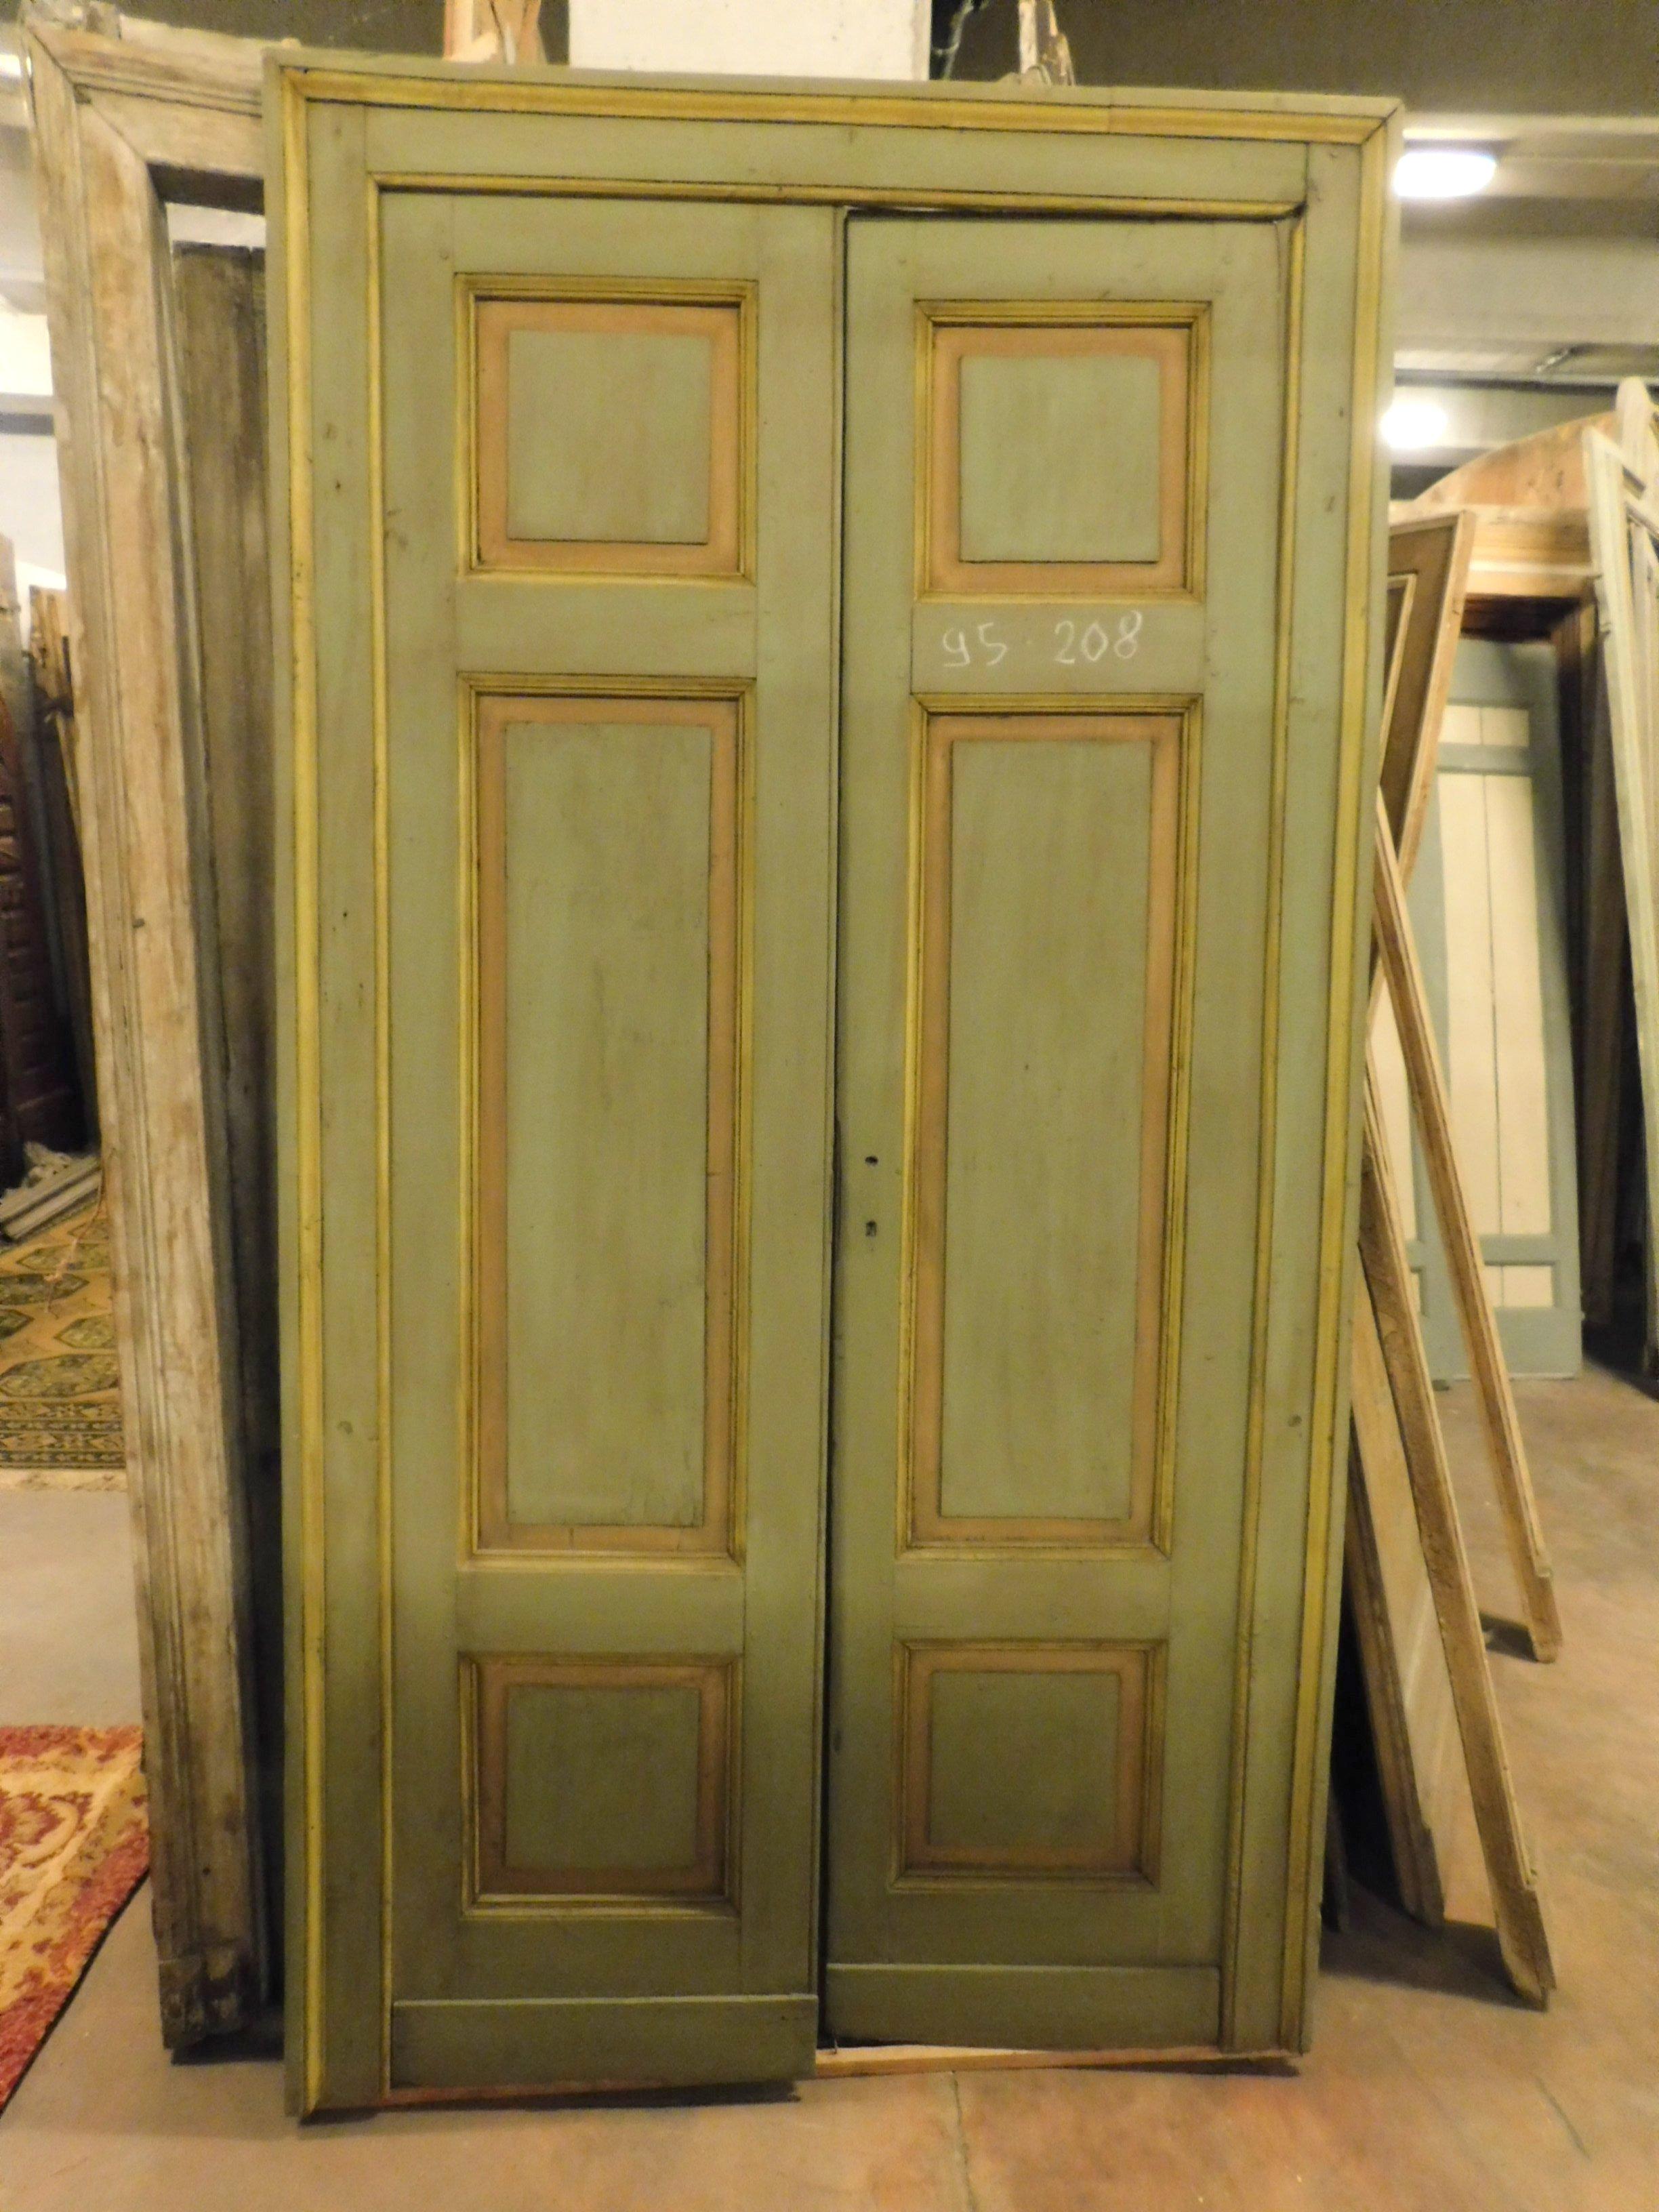 2 antike lackierte Türen mit Rahmen, auch auf der Rückseite gemalt, handgefertigt in Pappel, 19. Jahrhundert, von zu Hause in Italien, verkauft in Sätzen von 2, von zu Hause in Italien, nur die Hardware der Griffe zu überprüfen, Gesamtgröße mit